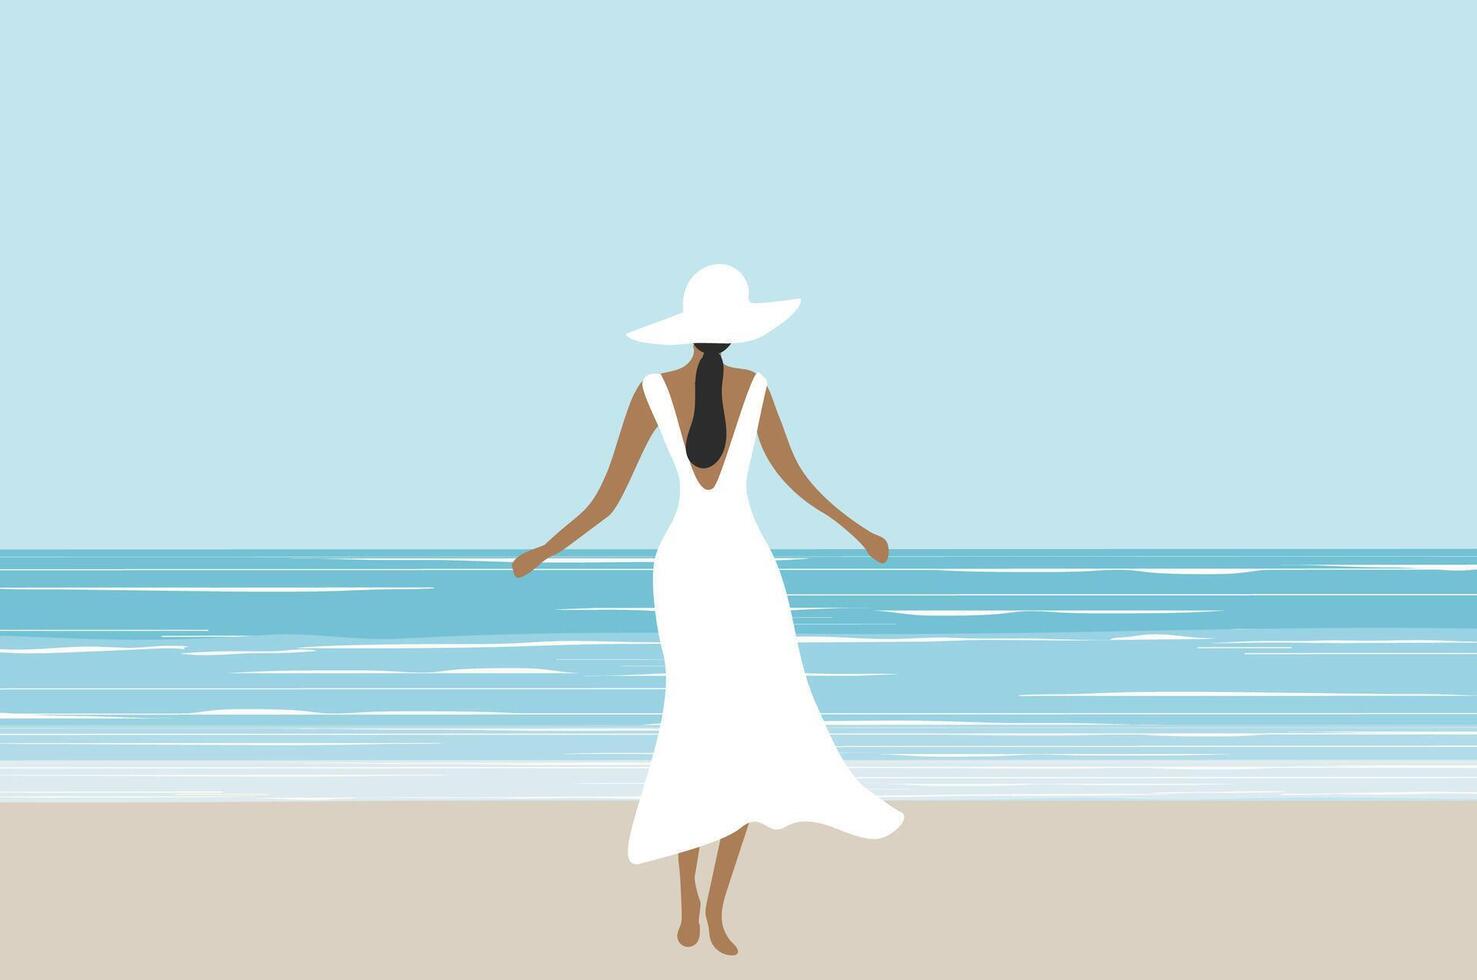 hermosa mujer en blanco vestir en el playa vector ilustración. verano Días festivos playa concepto